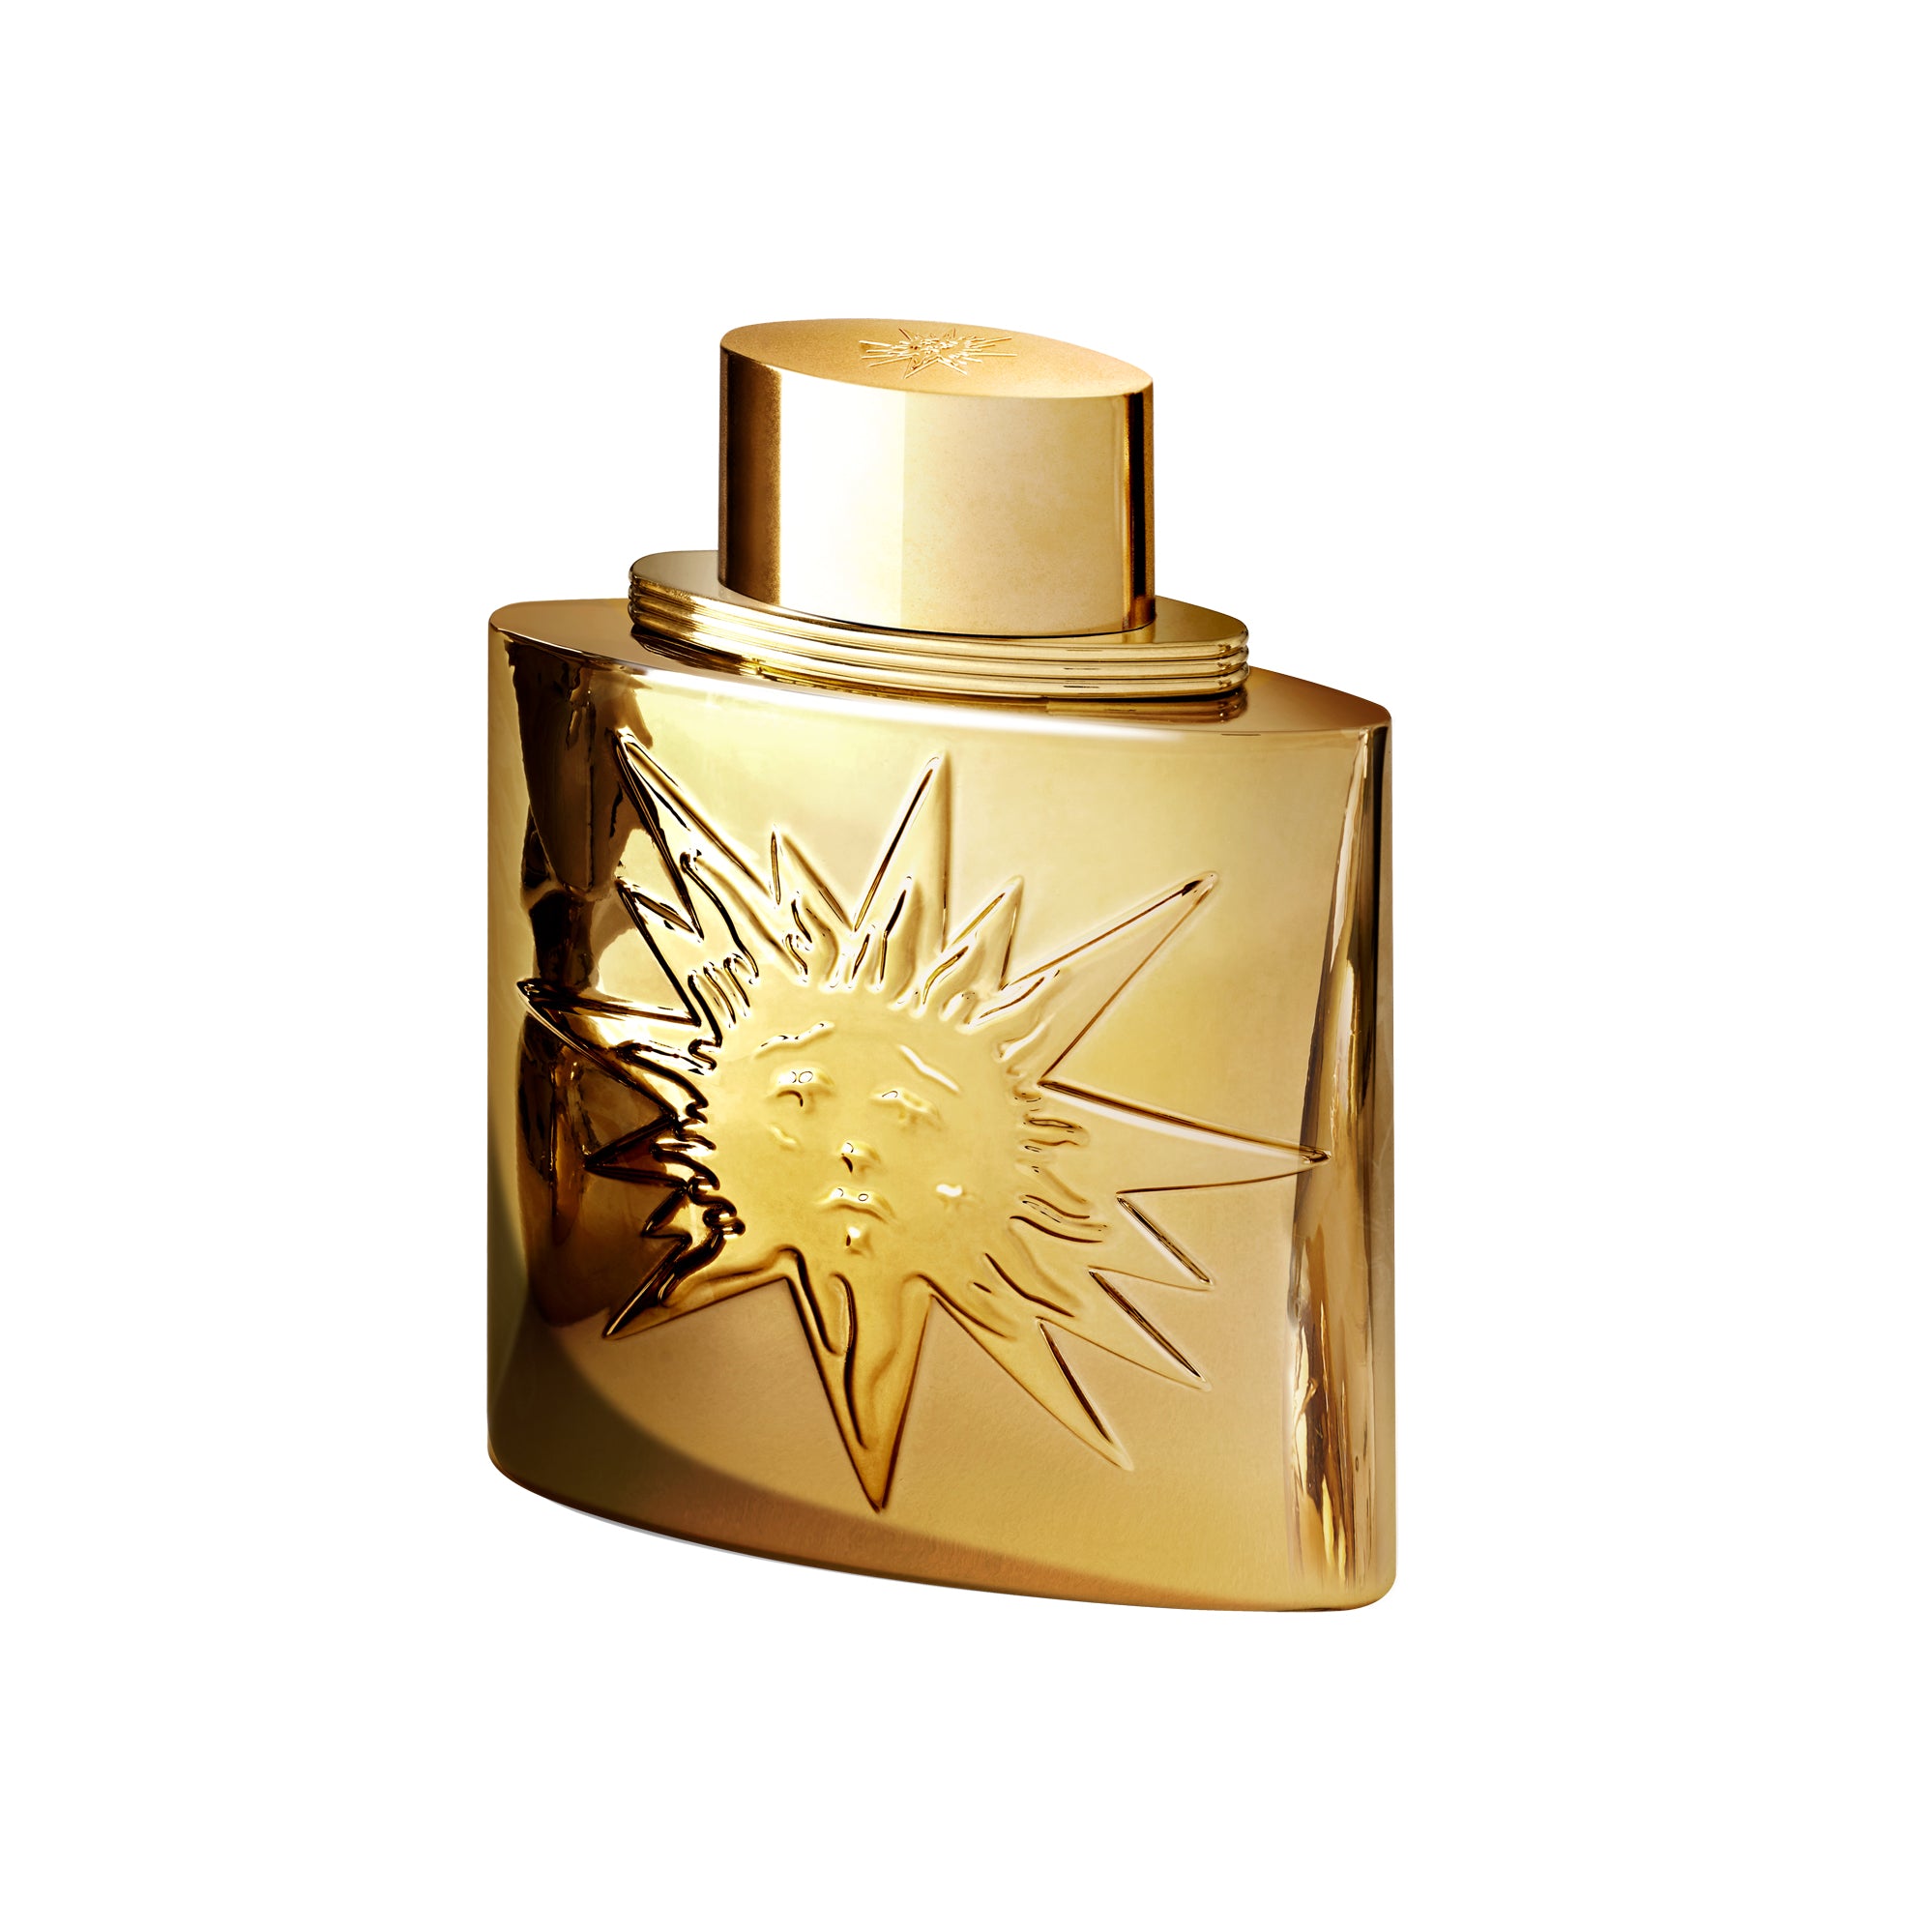 Tian Shan 100ml Eau de Parfum by Dalí Haute Parfumerie